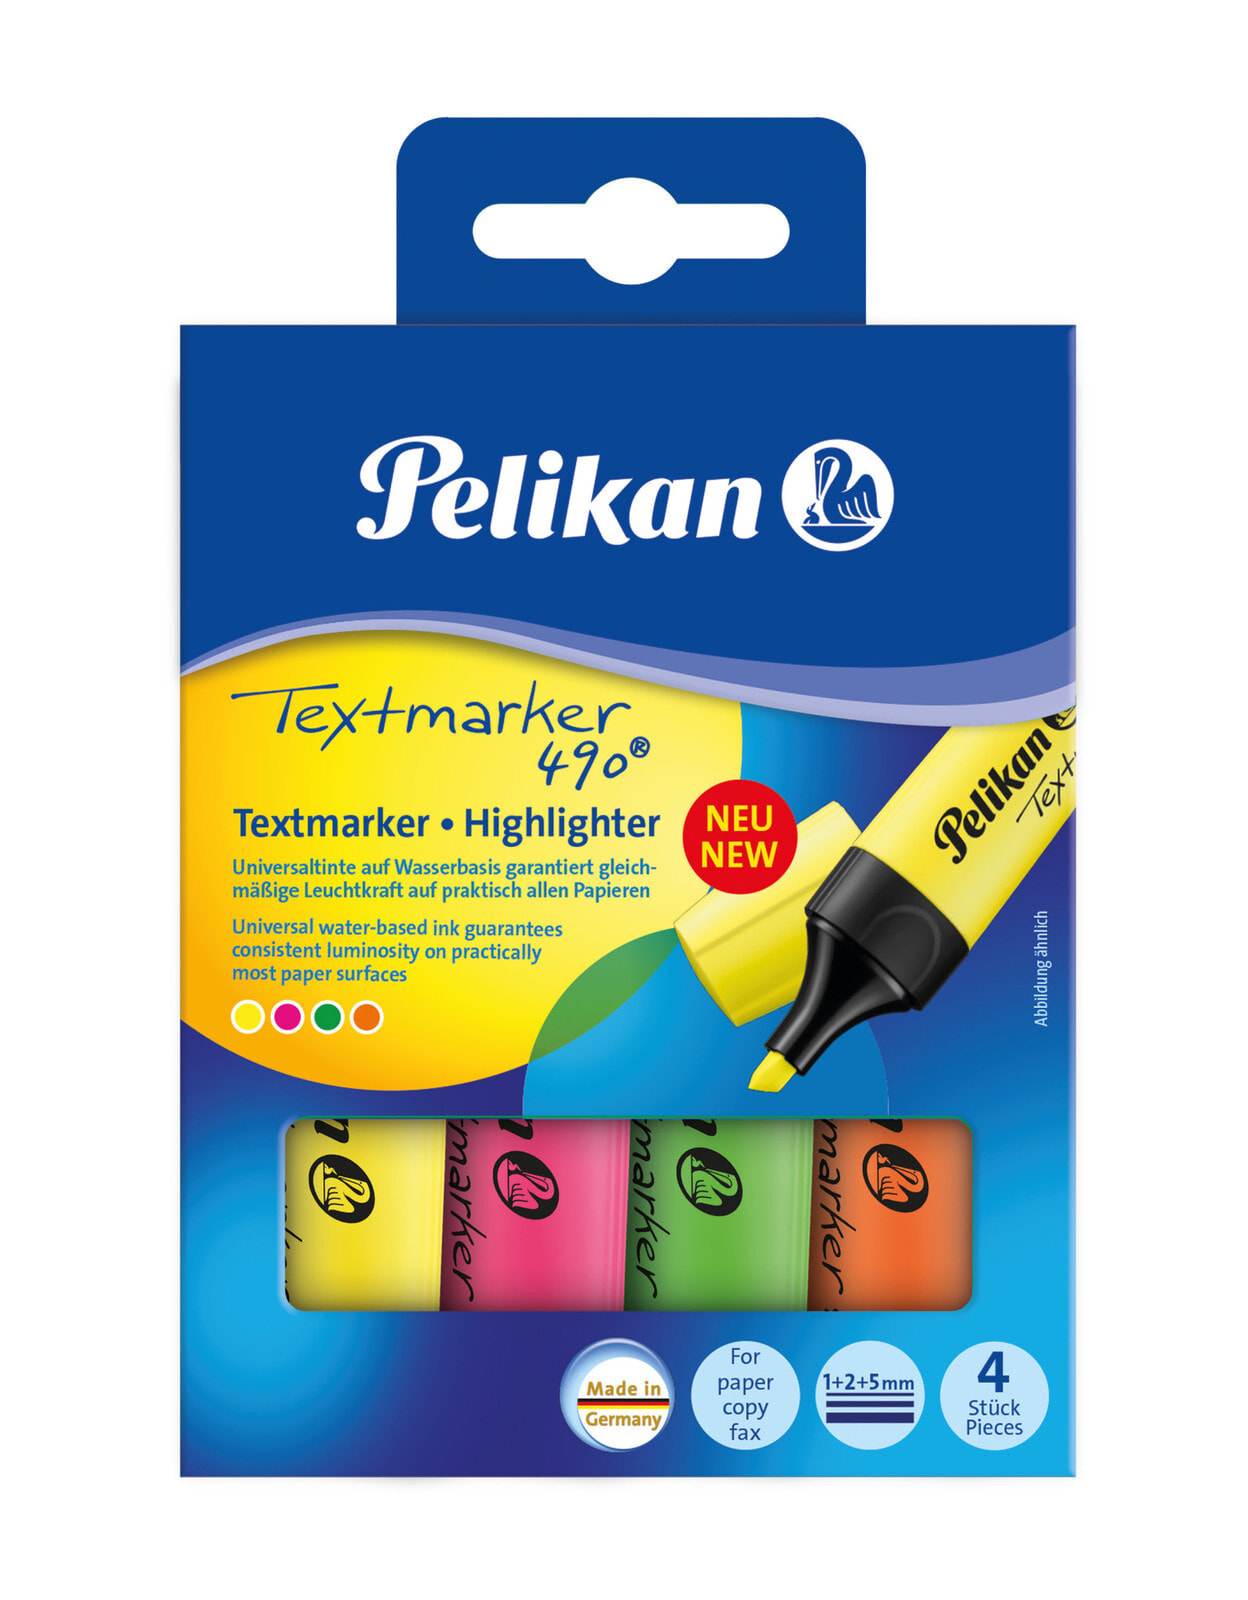 Pelikan Textmarker 490 маркер 4 шт Зеленый, Оранжевый, Розовый, Желтый 814058